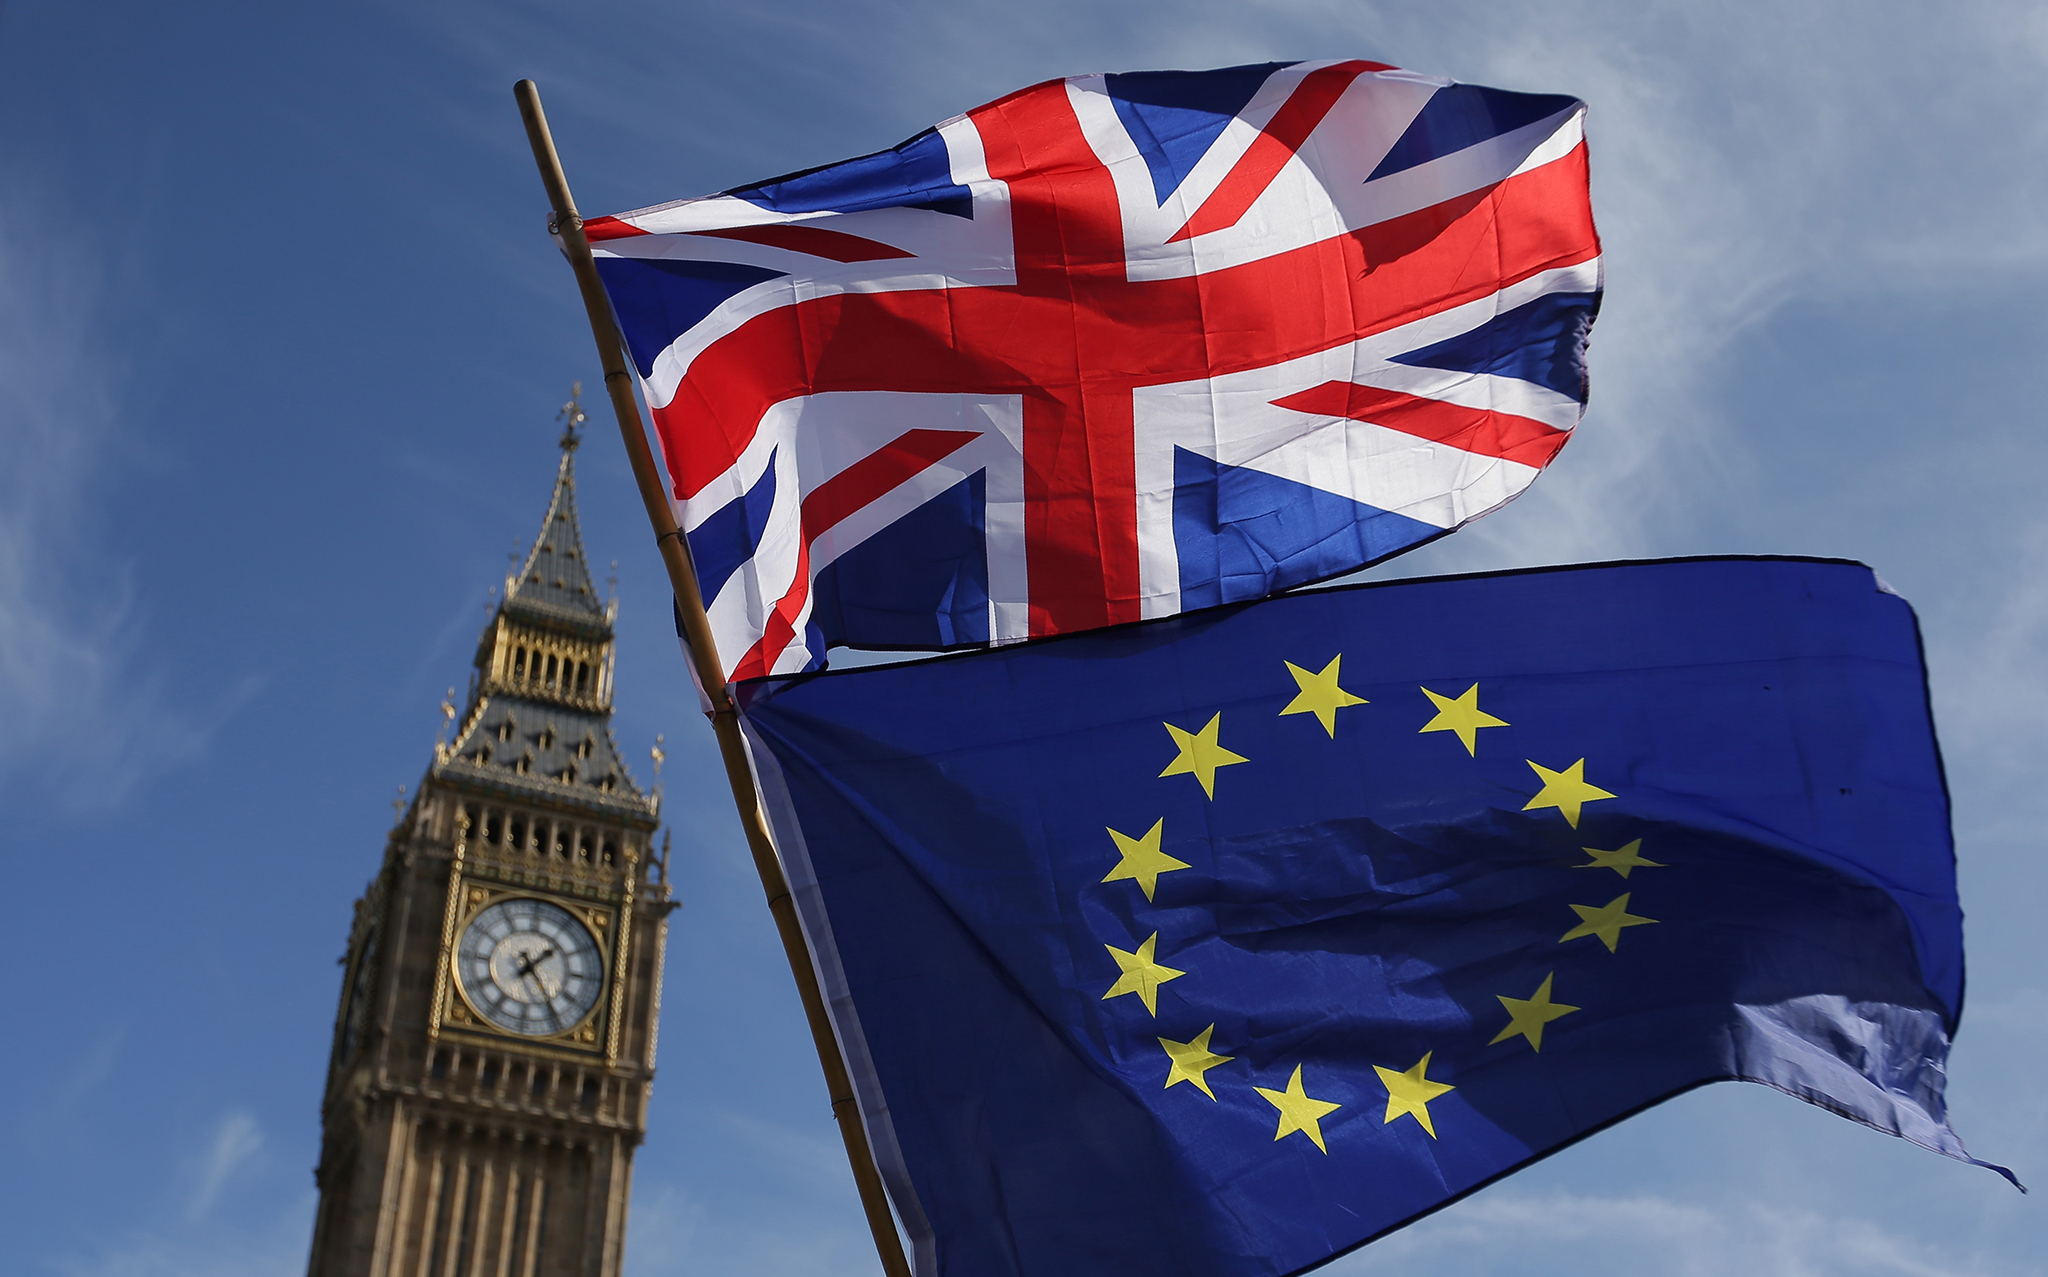 Quốc kỳ Anh (phía trên) và cờ Liên minh châu Âu (EU) phía dưới bên ngoài tòa nhà Quốc hội Anh ở London. Ảnh: AFP/TTXVN